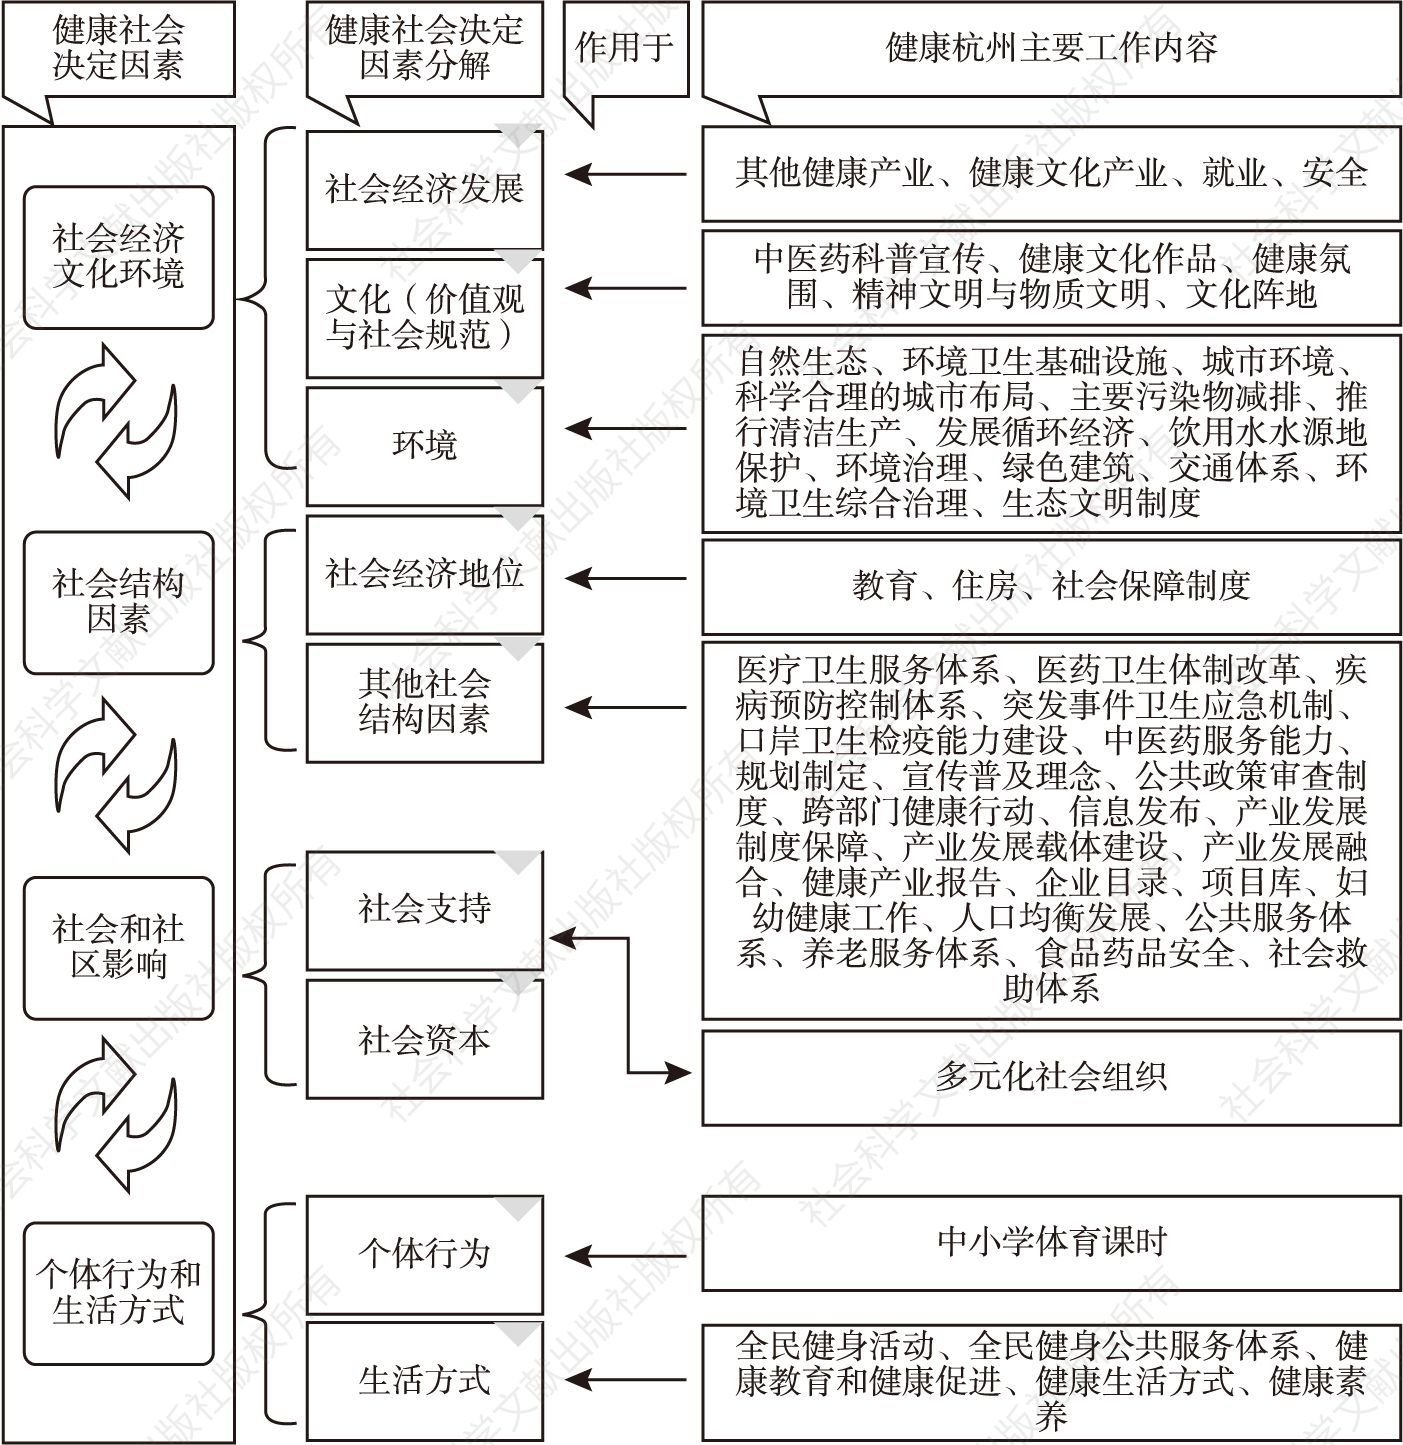 图5 “健康杭州工作要素”与健康社会决定因素分解表的匹配